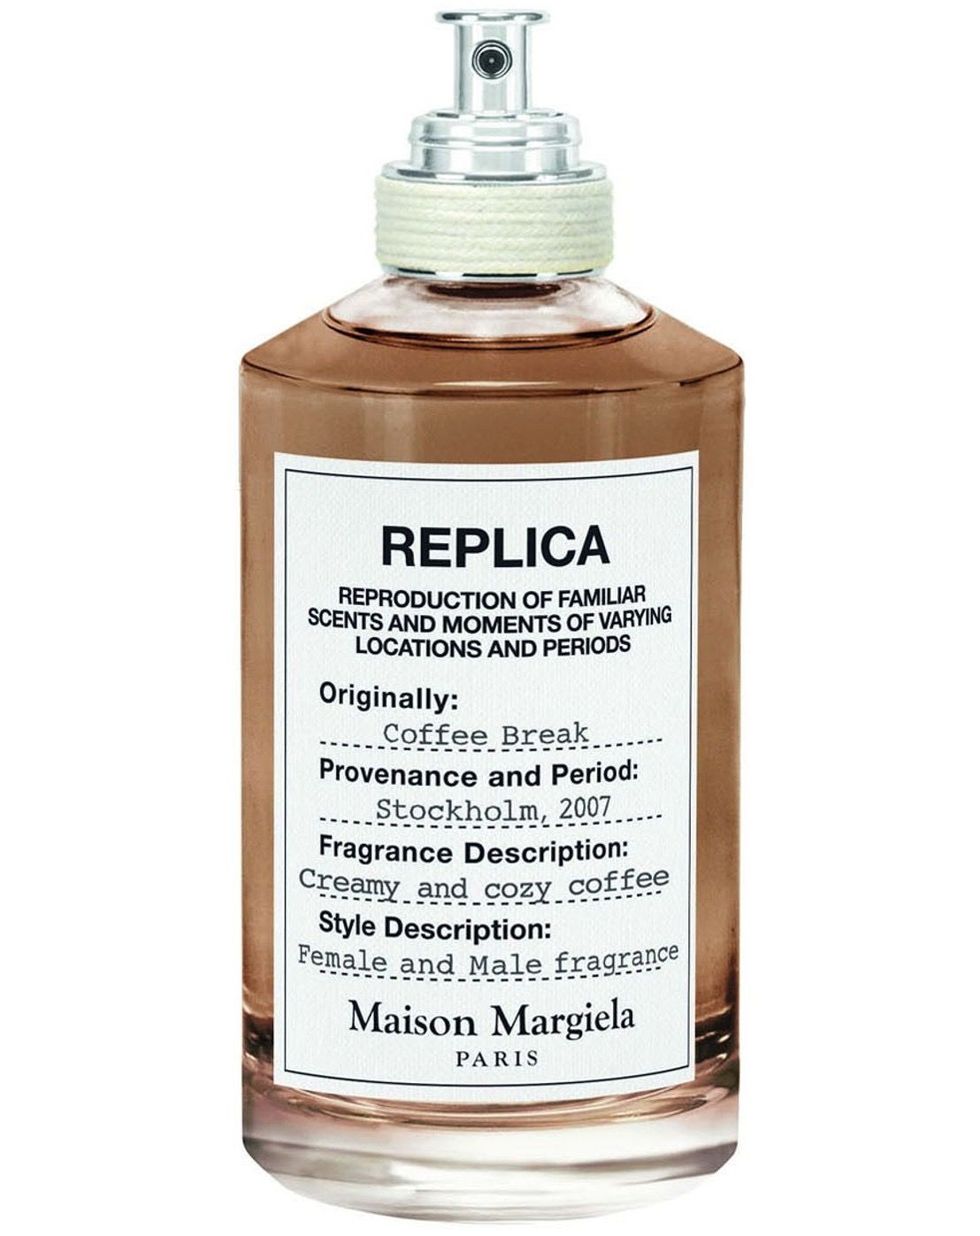 Maison Margiela Replica - Coffee Break